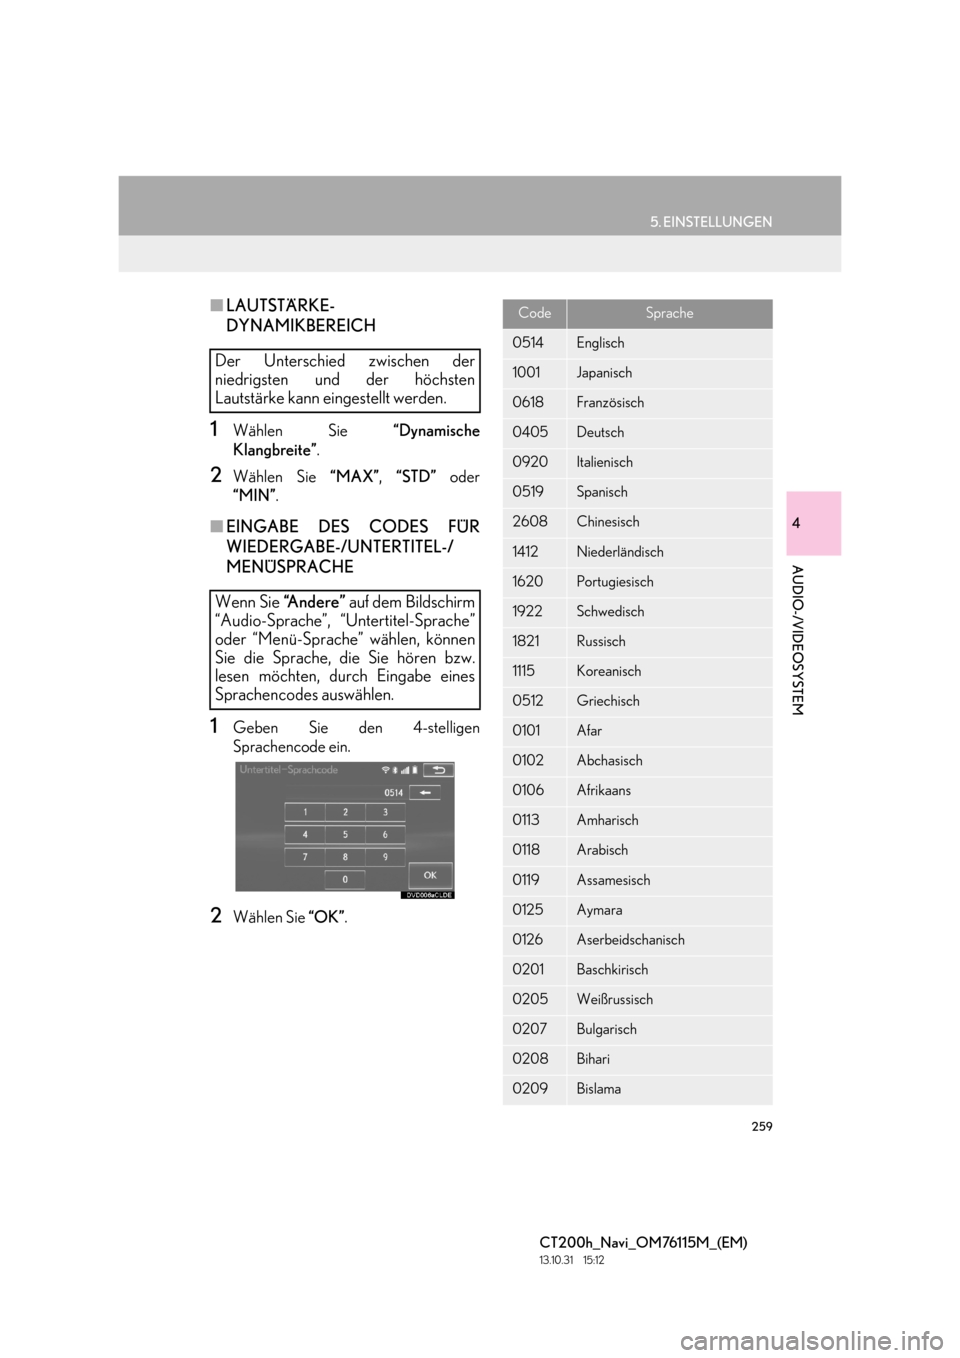 Lexus CT200h 2014  Navigation Handbuch (in German) 259
5. EINSTELLUNGEN
4
AUDIO-/VIDEOSYSTEM
CT200h_Navi_OM76115M_(EM)
13.10.31     15:12
■LAUTSTÄRKE-
DYNAMIKBEREICH
1Wählen Sie  “Dynamische
Klangbreite” .
2Wählen Sie  “MAX”, “STD”  o